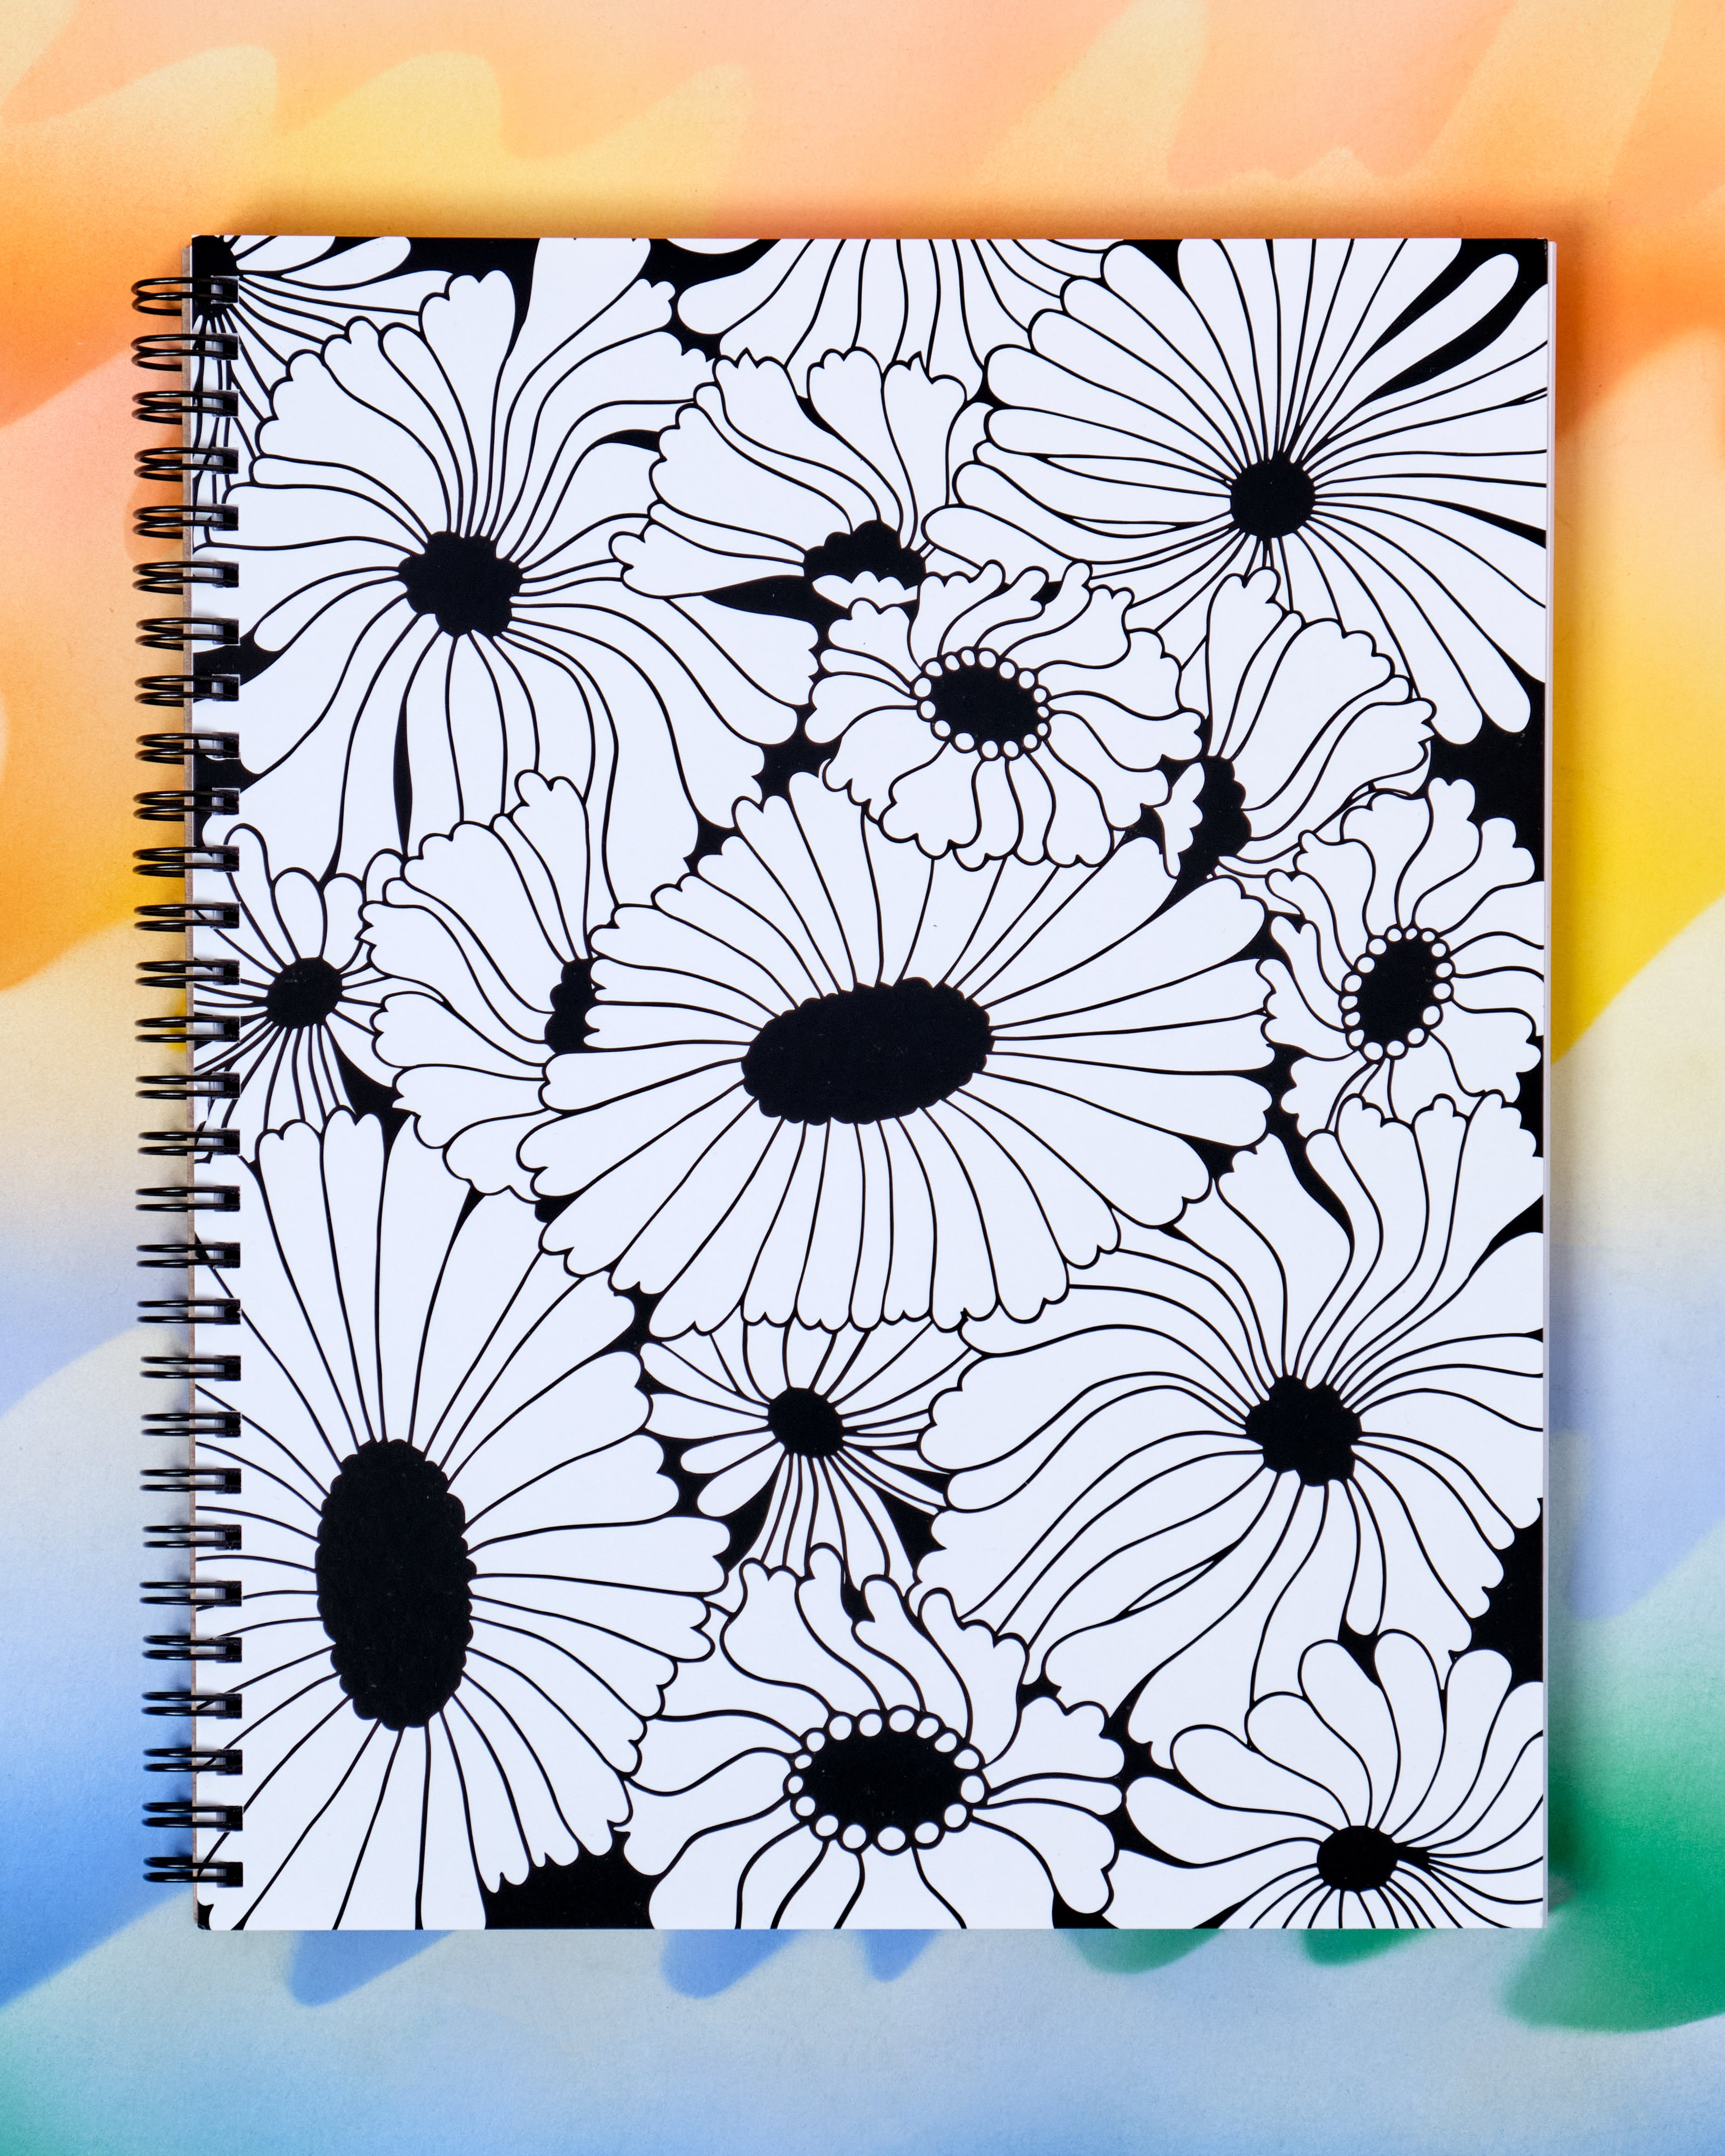 Art Alternatives Hardbound Sketchbook 5.5x8